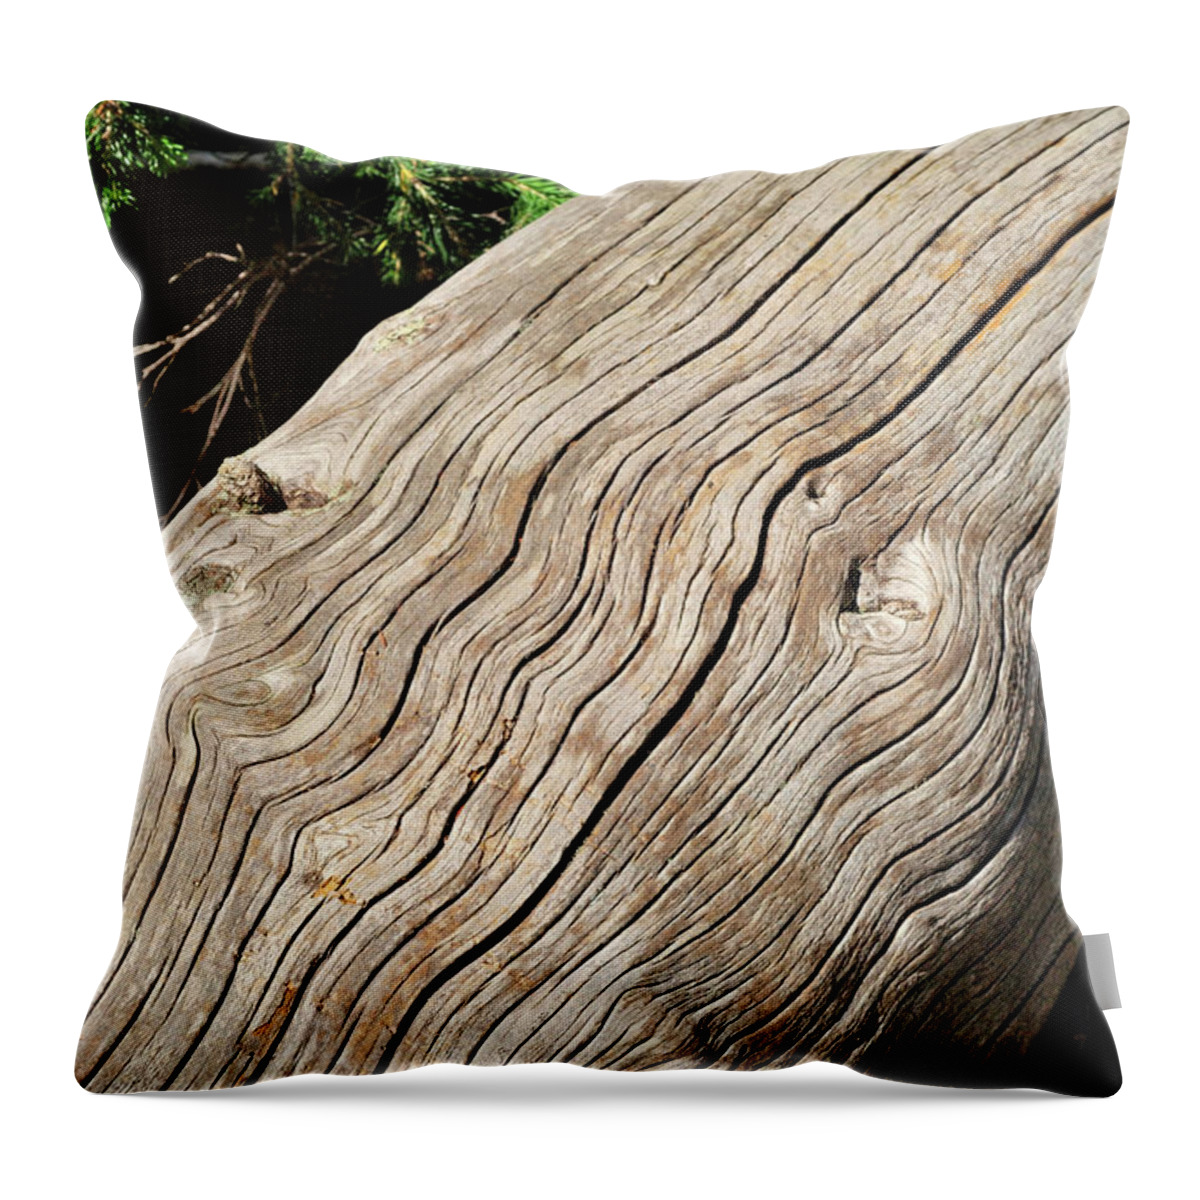 Forest Throw Pillow featuring the photograph Fallen Fir by Ron Cline